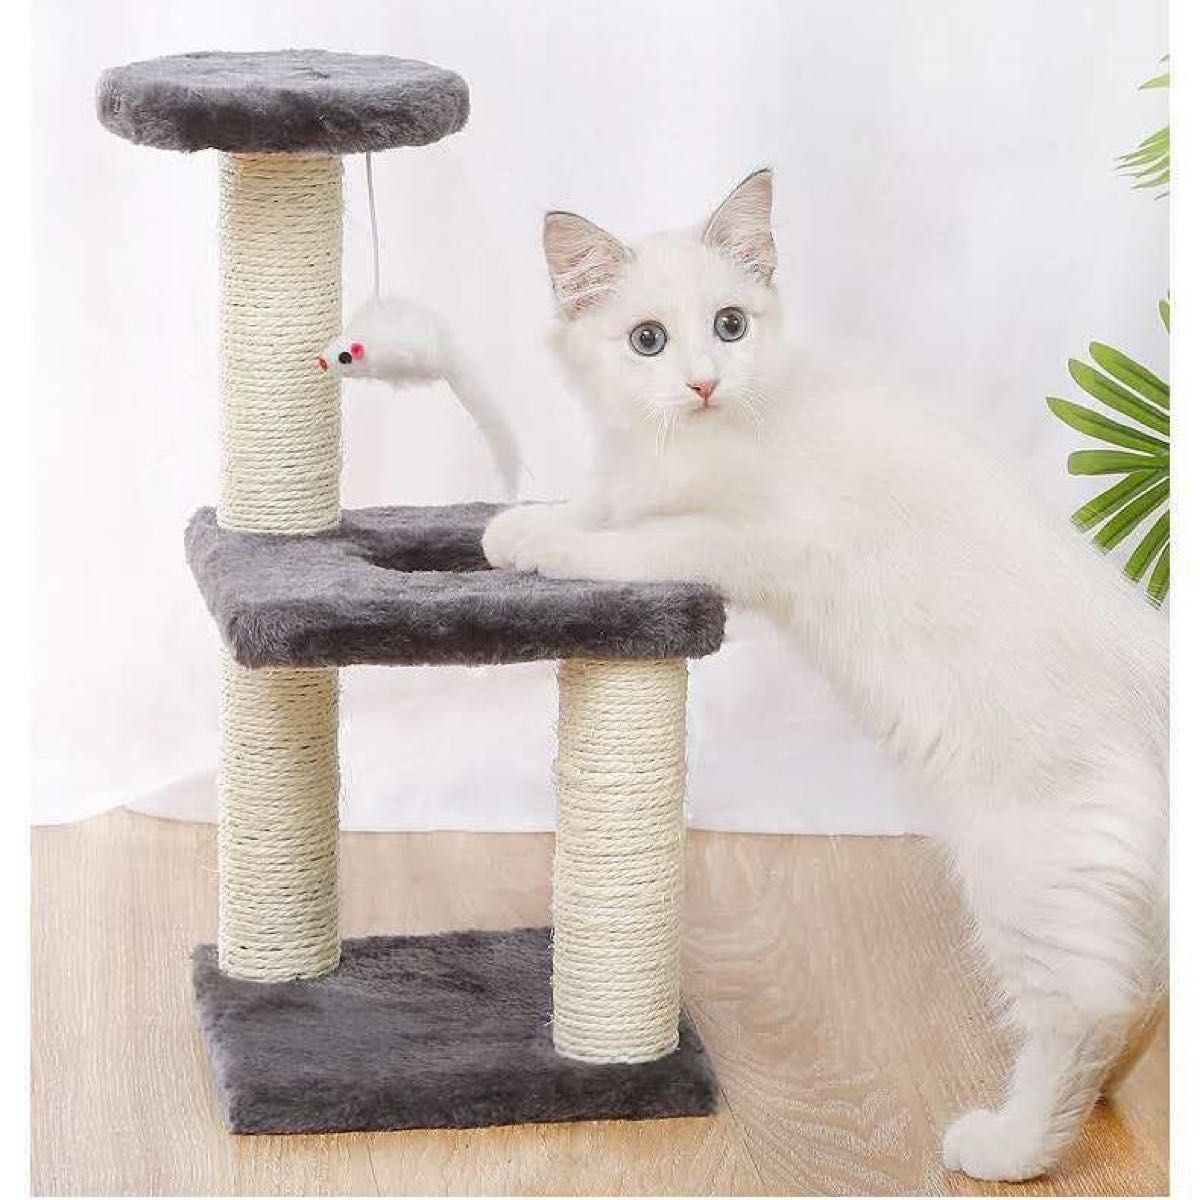 新品☆キャットタワー 組み立て簡単 3階建て グレー【438】ペット 猫タワー 猫用品 据え置き型 ネコ キャットタワー